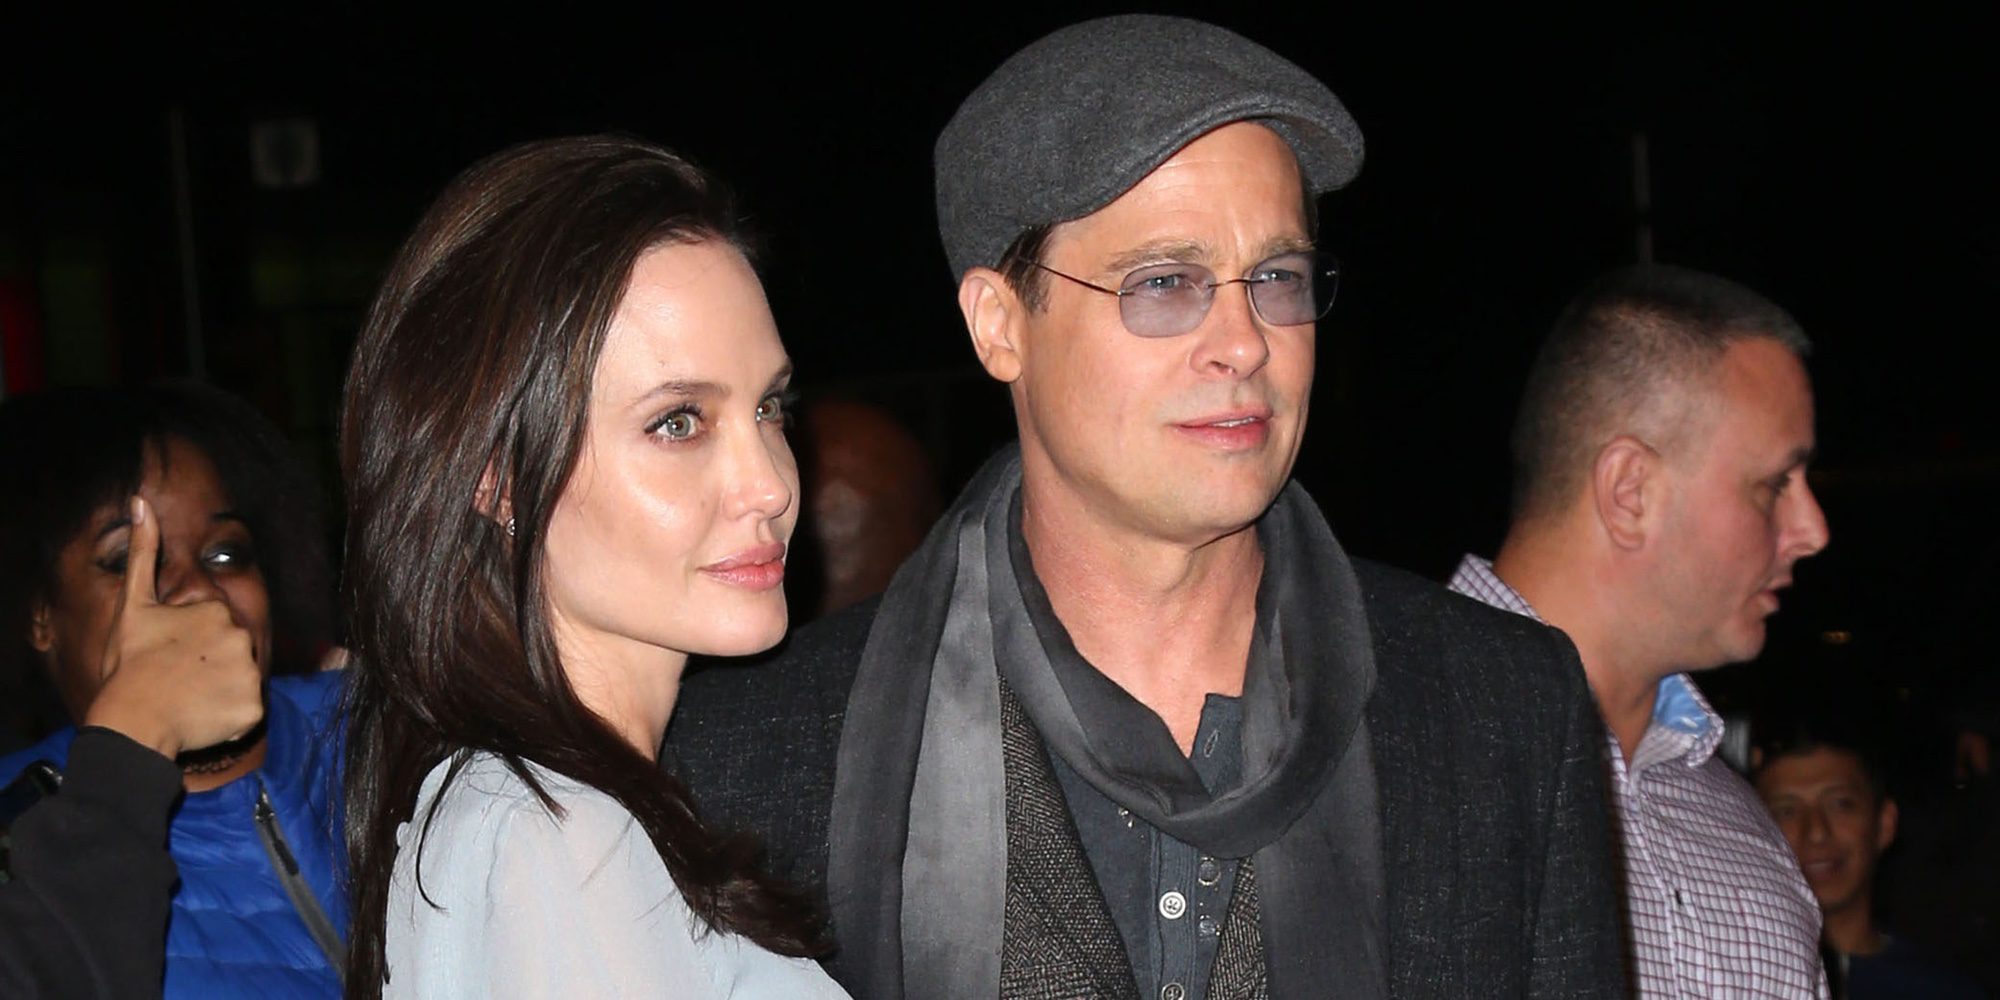 Crecen los rumores de romance secreto entre Angelina Jolie y un empresario británico